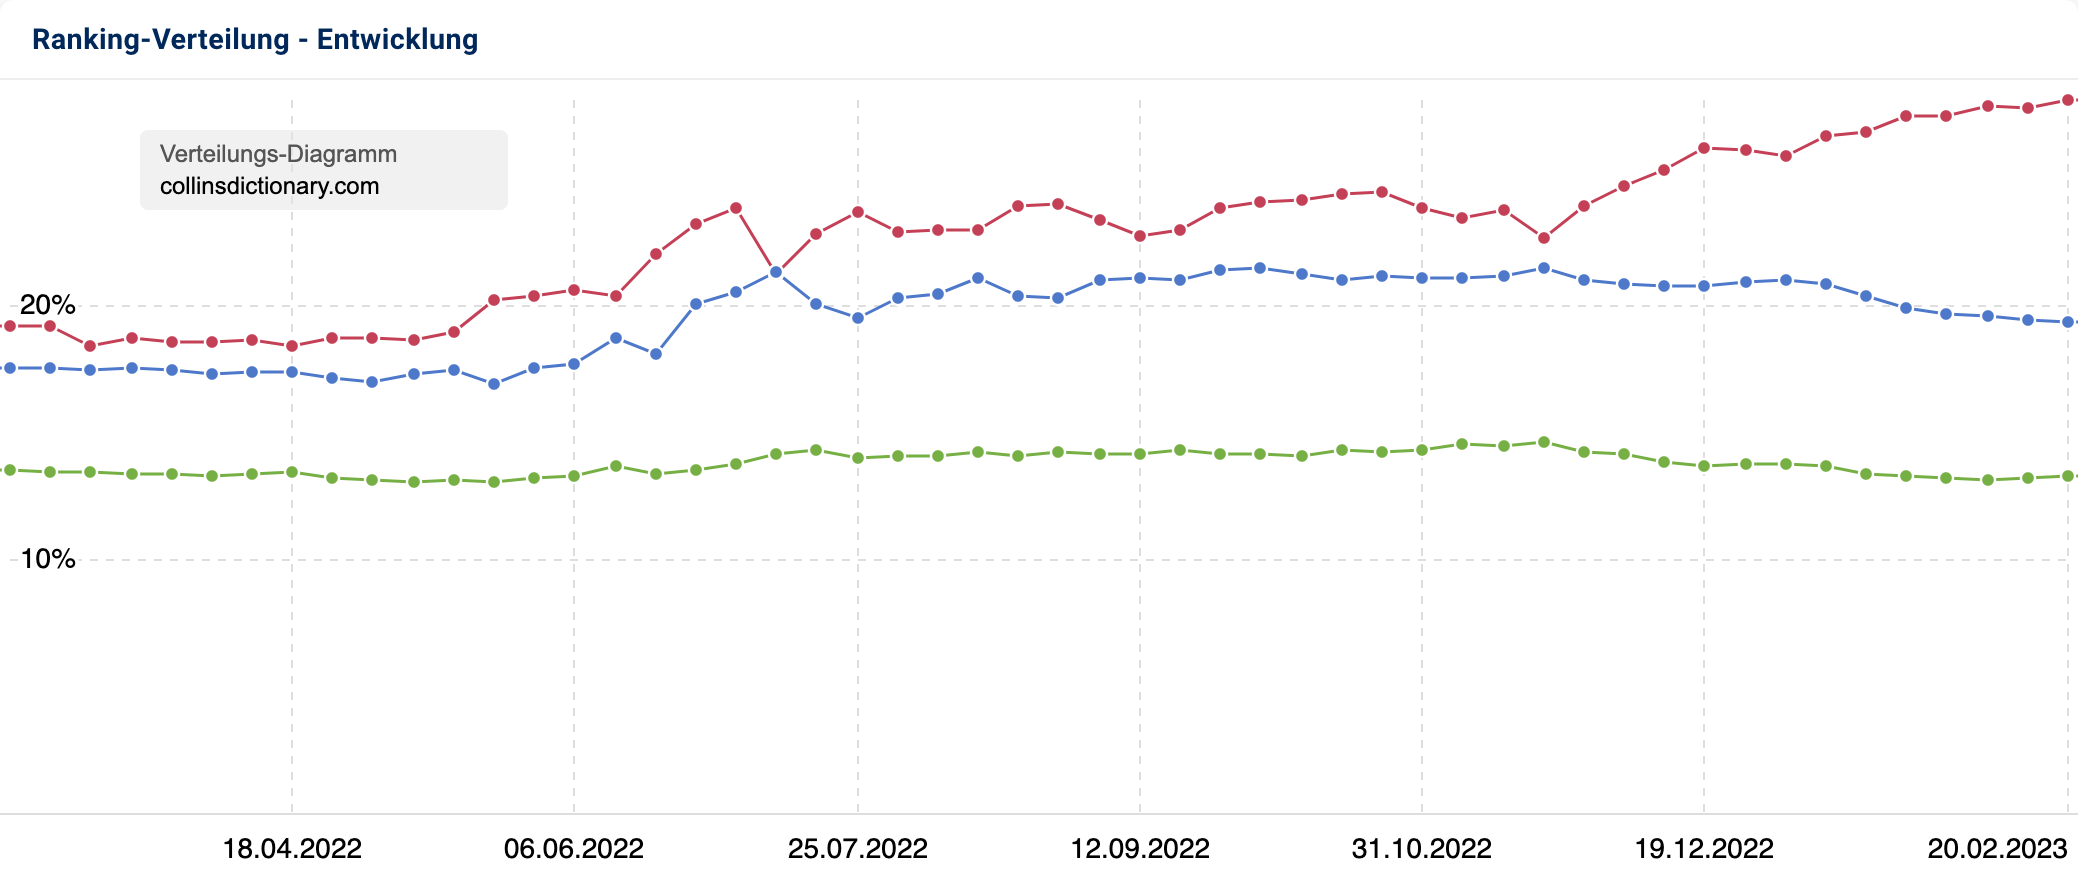 Die prozentuale Ranking-Verteilung der Domain collinsdictionary.com. Der Verlauf der Seite 1 ist seit Ende 2022 steigend wohingegen die Seiten 2 und 3 eher gleichbleibend bzw leicht sinkend sind.